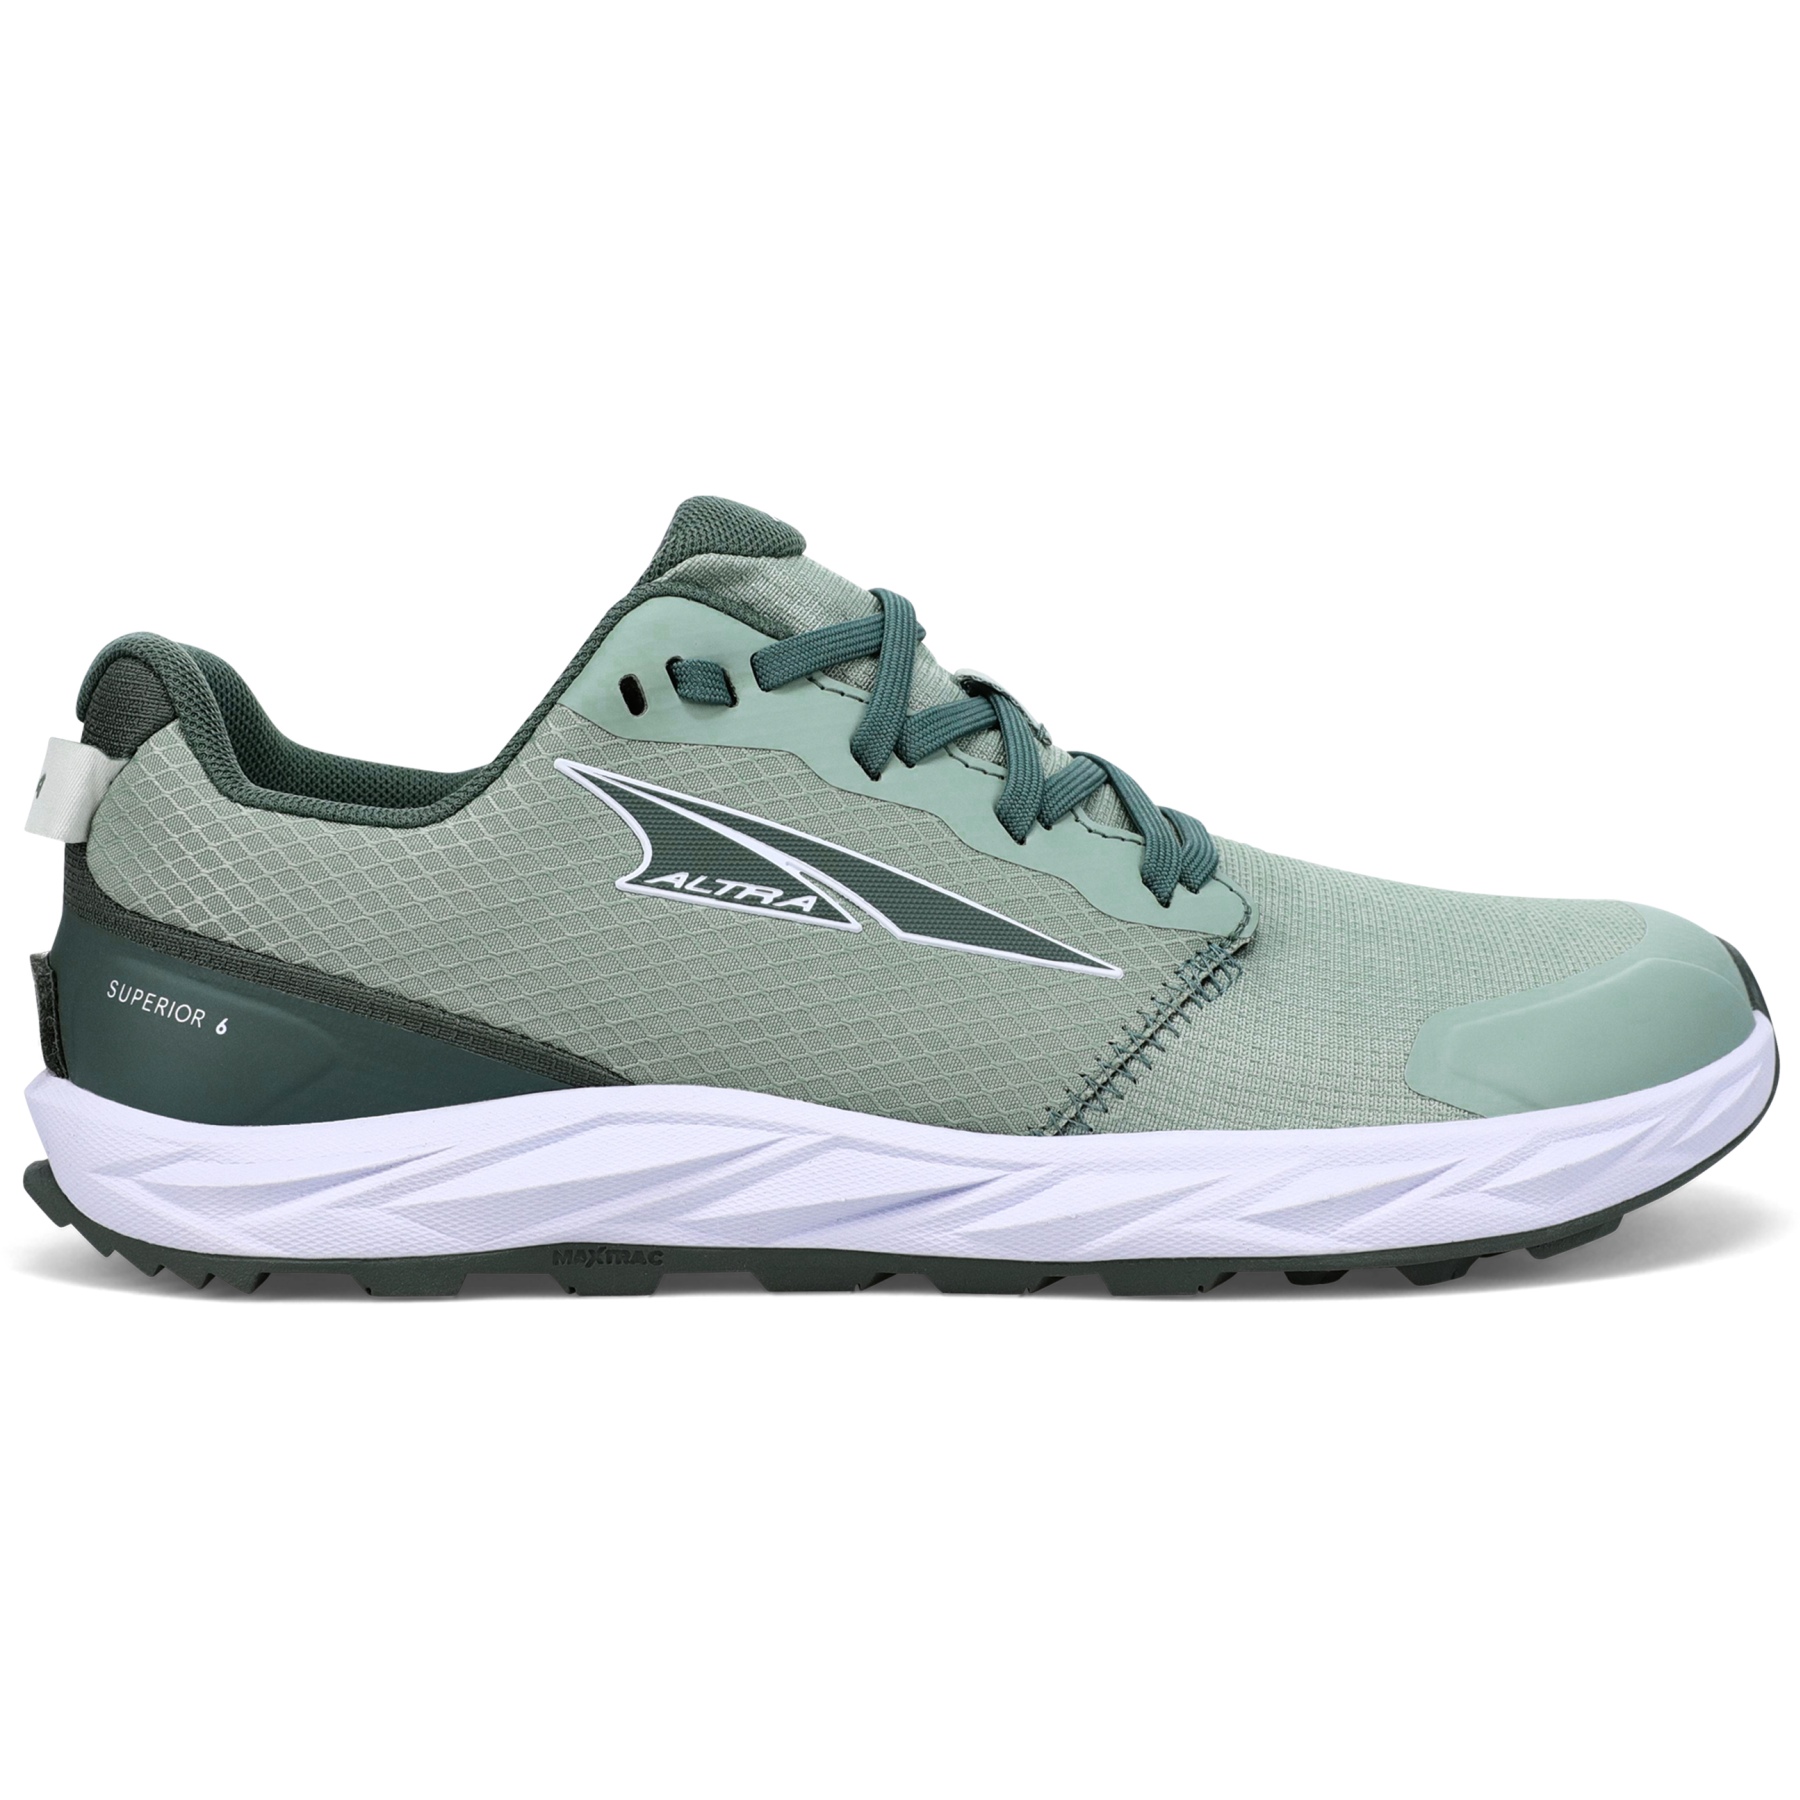 Produktbild von Altra Superior 6 Trailrunning Schuhe Damen - Grün